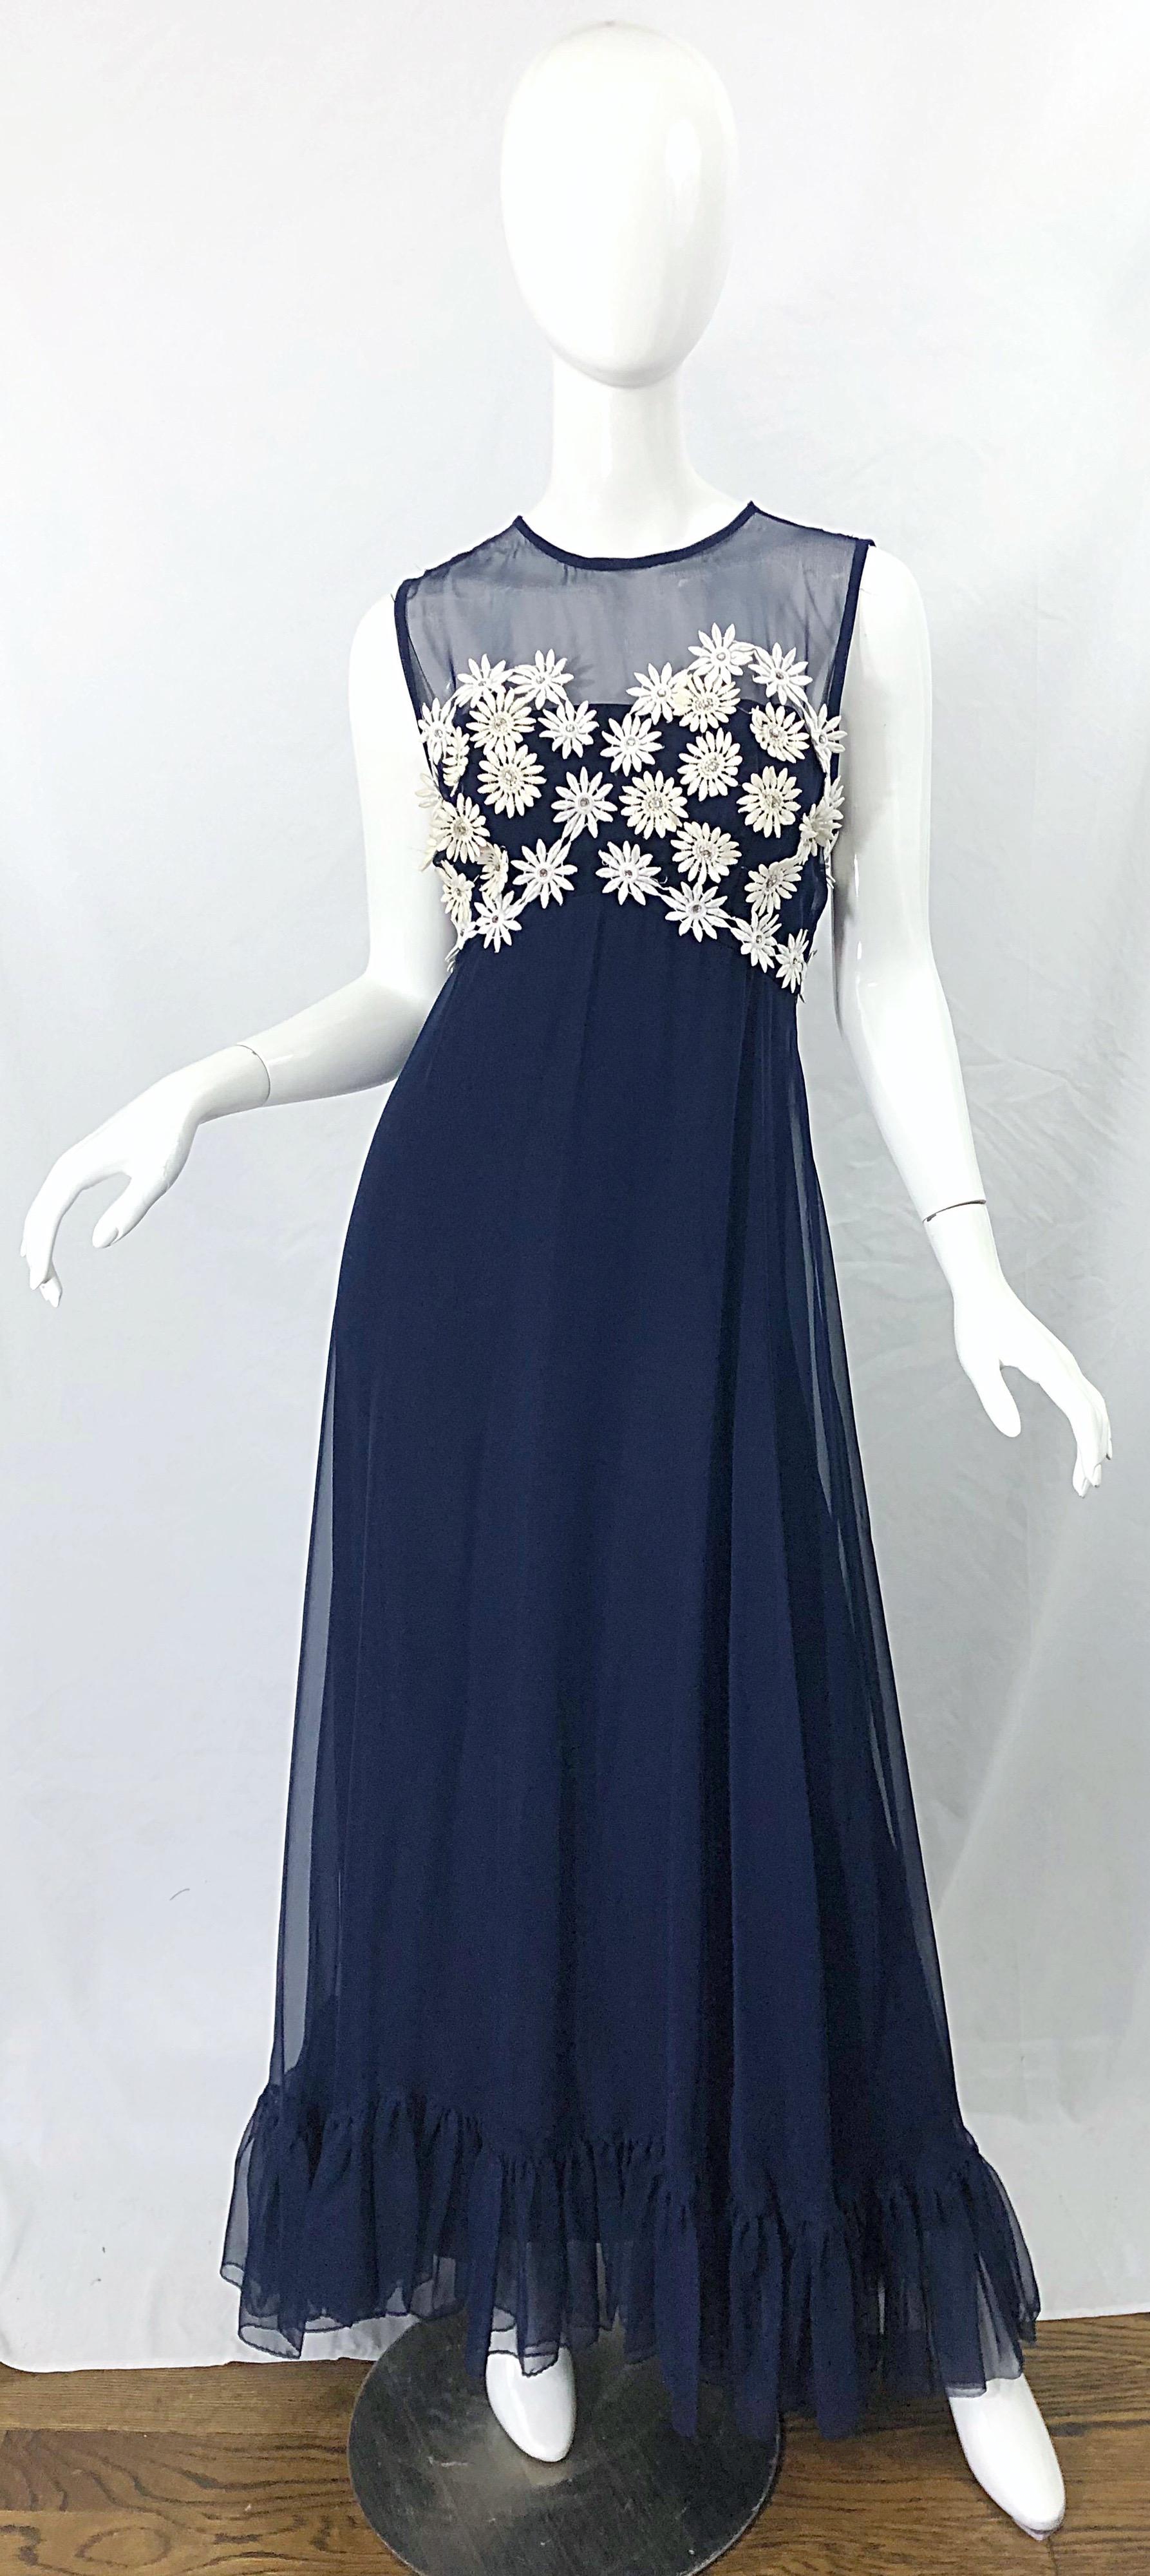 Magnifique robe des années 1960 en mousseline de soie bleu marine et blanche, avec appliques de strass et fleurs ! Le corsage est orné de fleurs blanches cousues à la main et incrustées de strass. Col et dos transparents. Fermeture à glissière